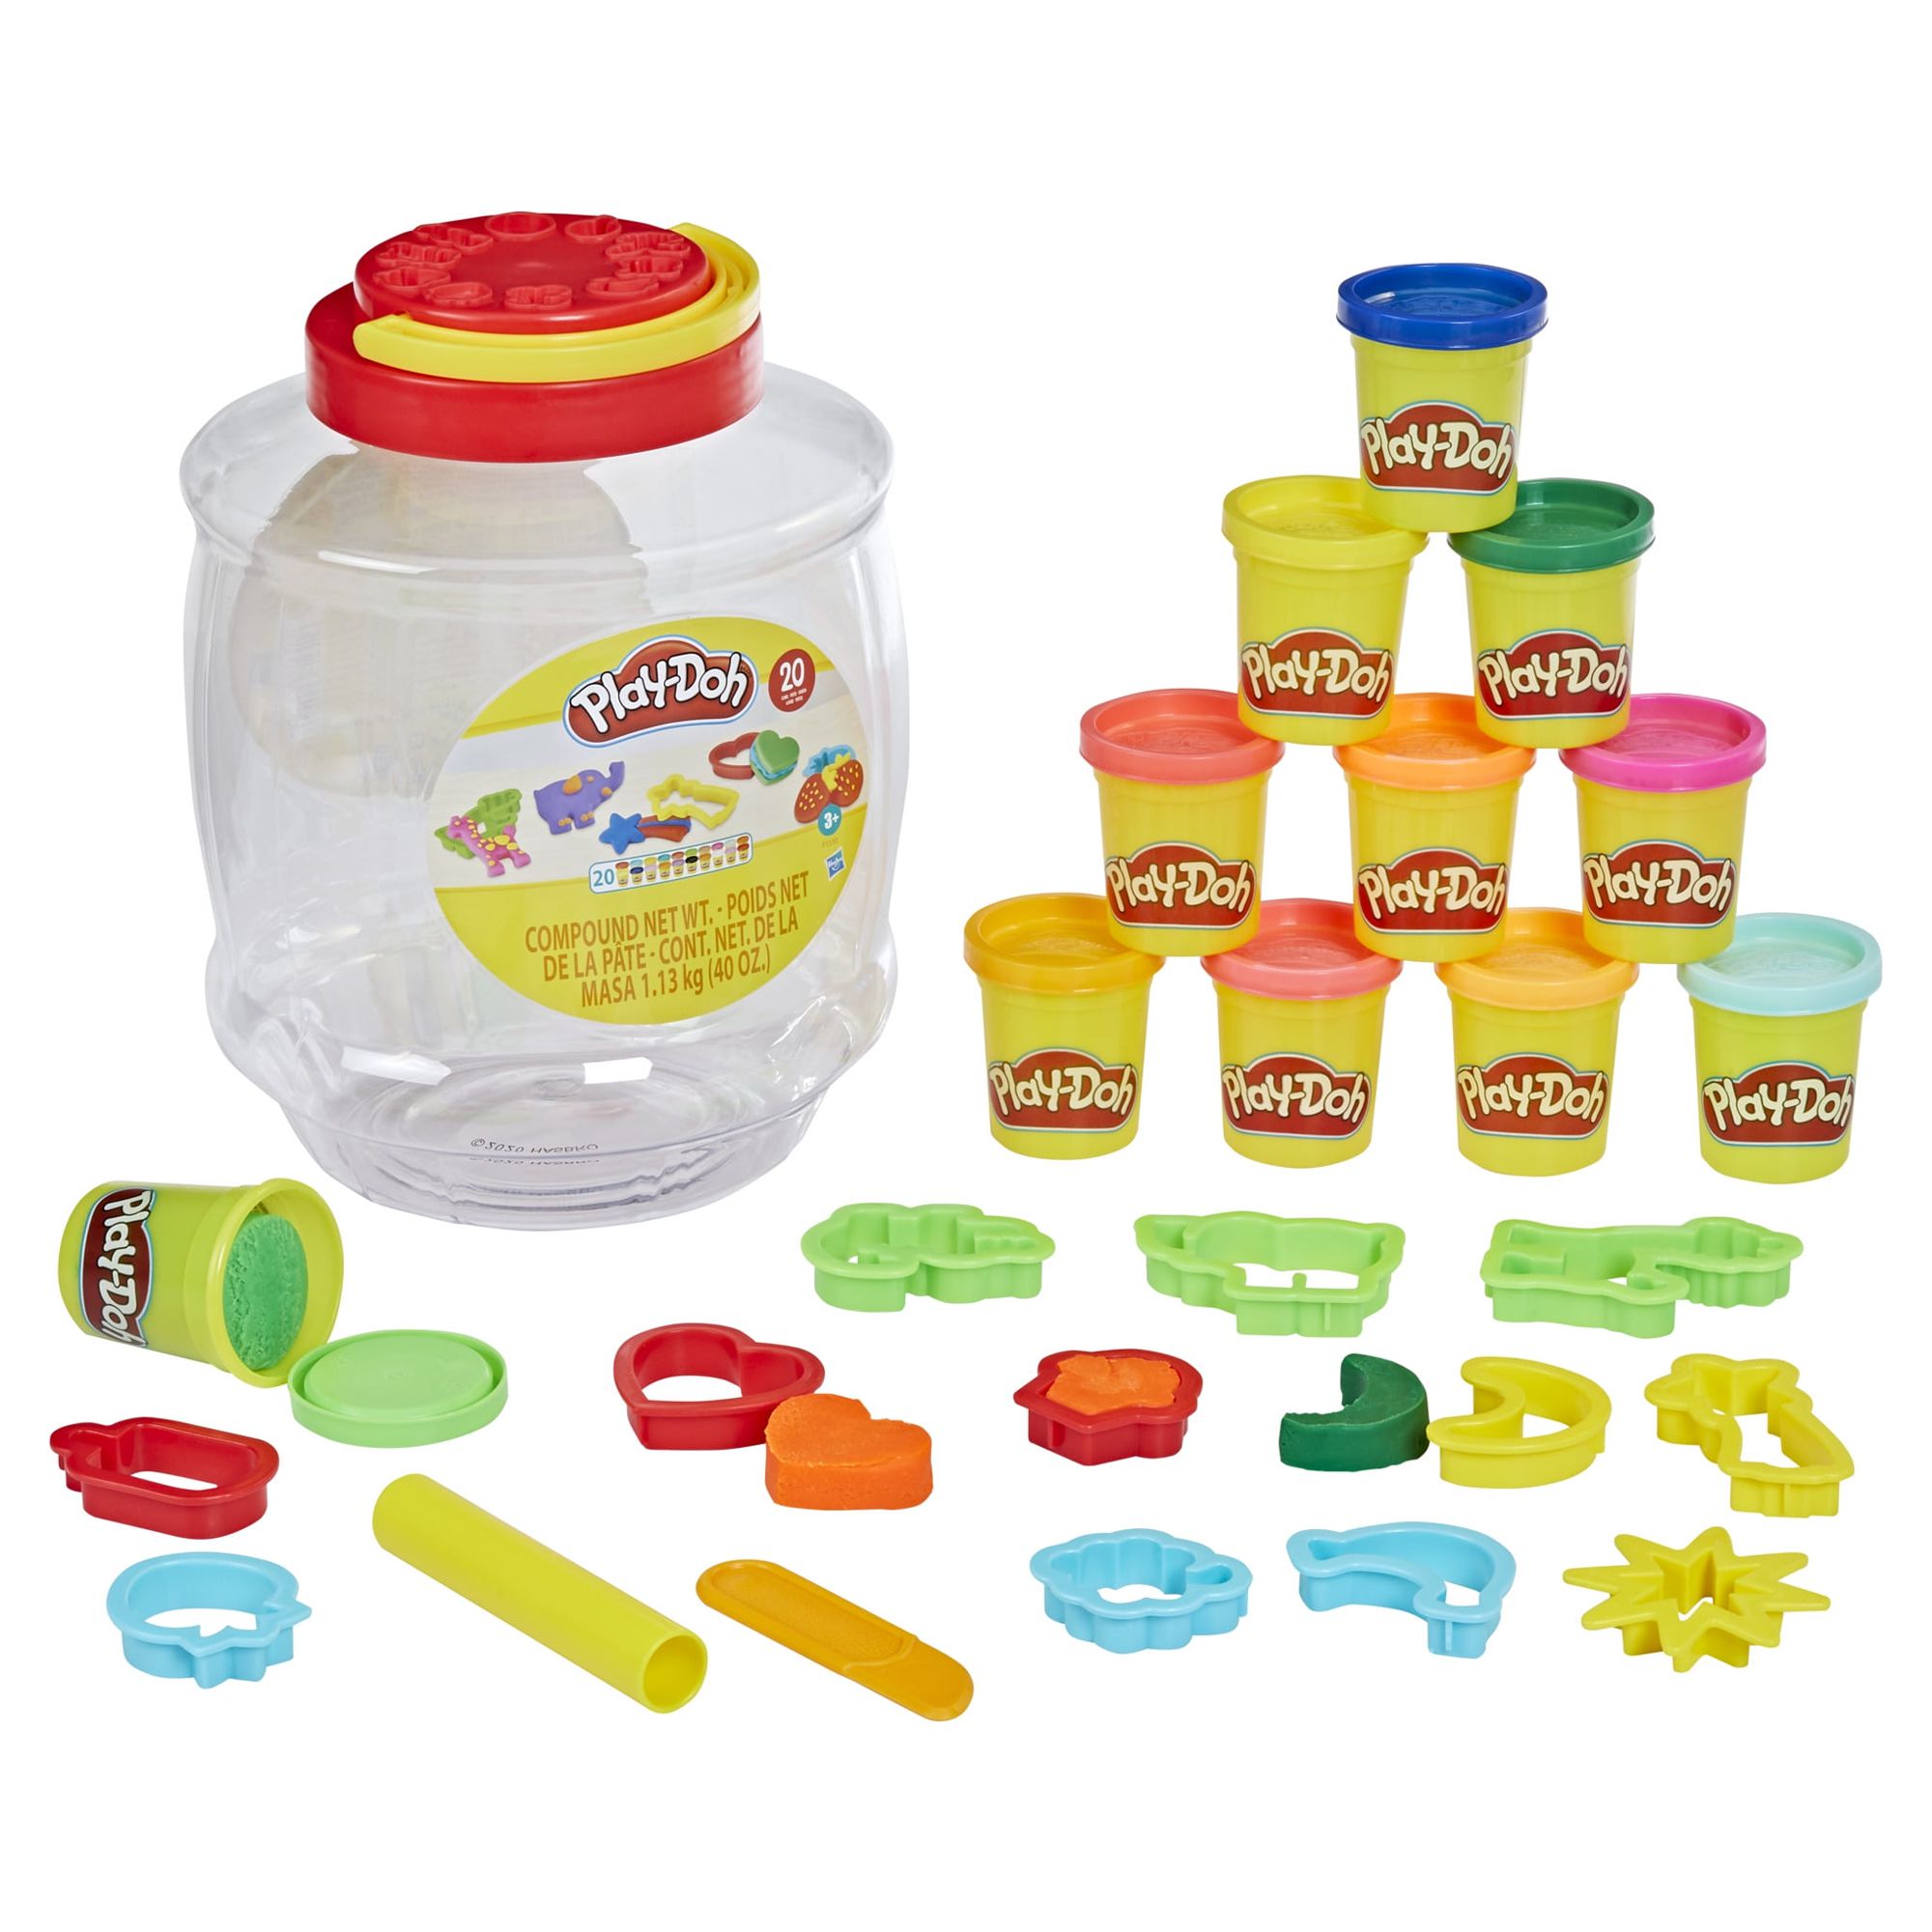 Play-Doh Bucket of Fun Play Dough Set - 20 Colors (20 Piece), Size: 40 Ounces